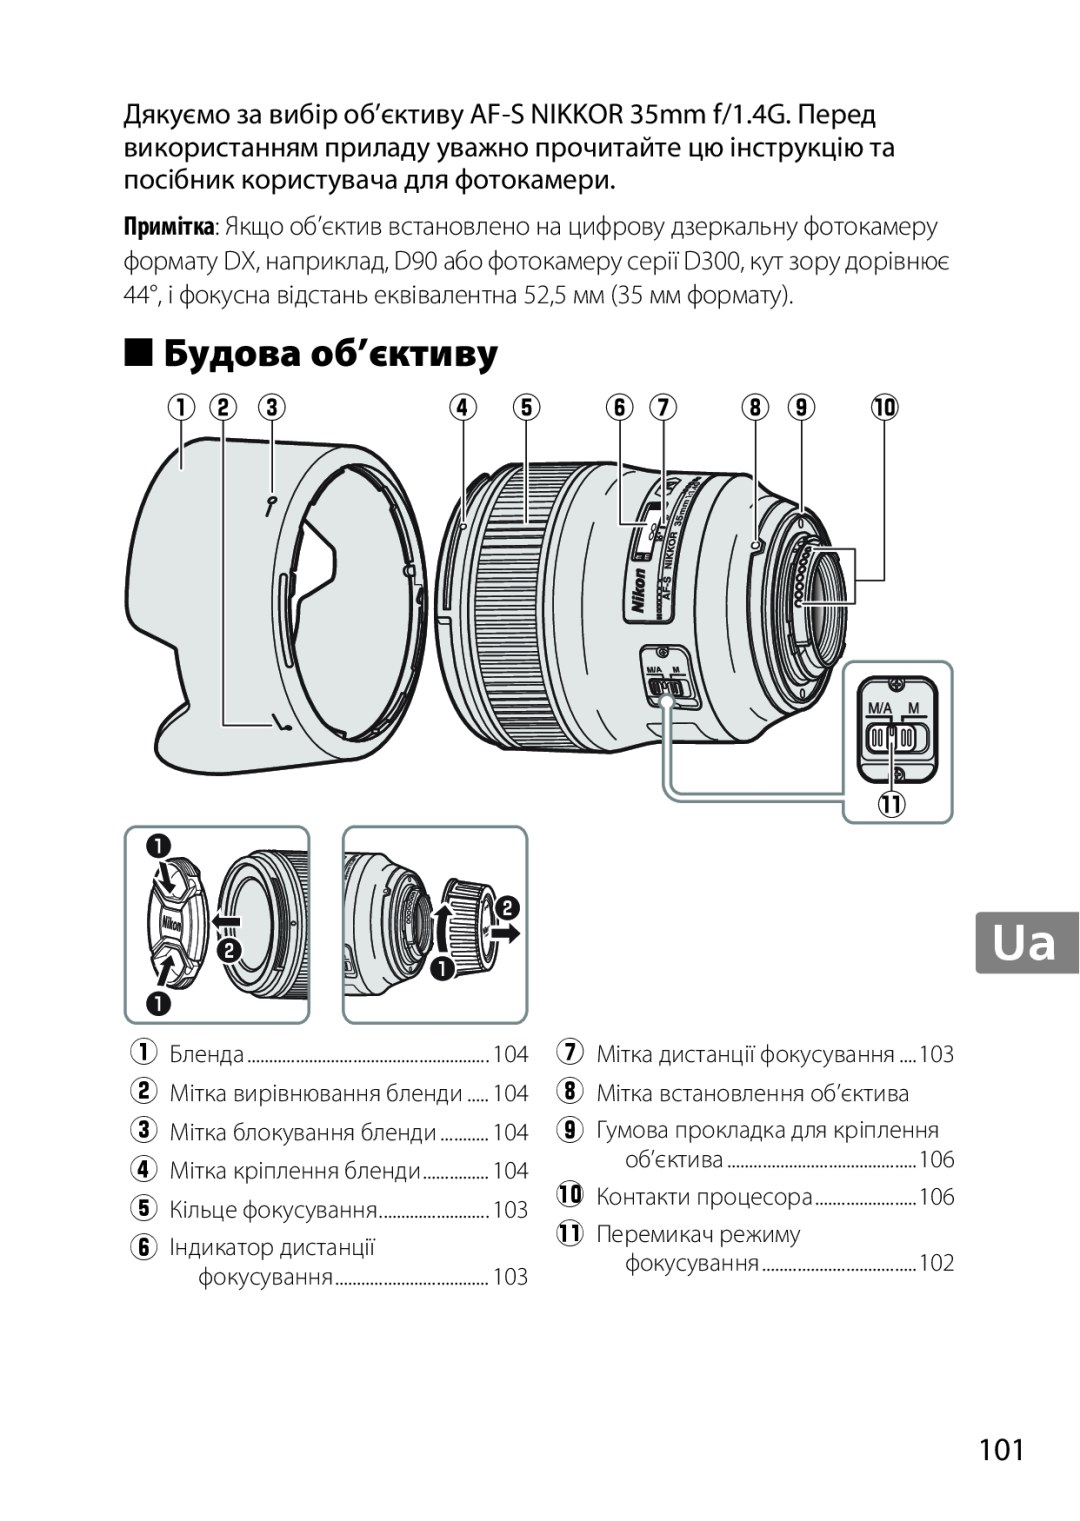 Nikon 35mmf14G, AF-S, 35mm f/1.4G, 2198 user manual Будова об’єктиву, q w e, r t y u i o !0 